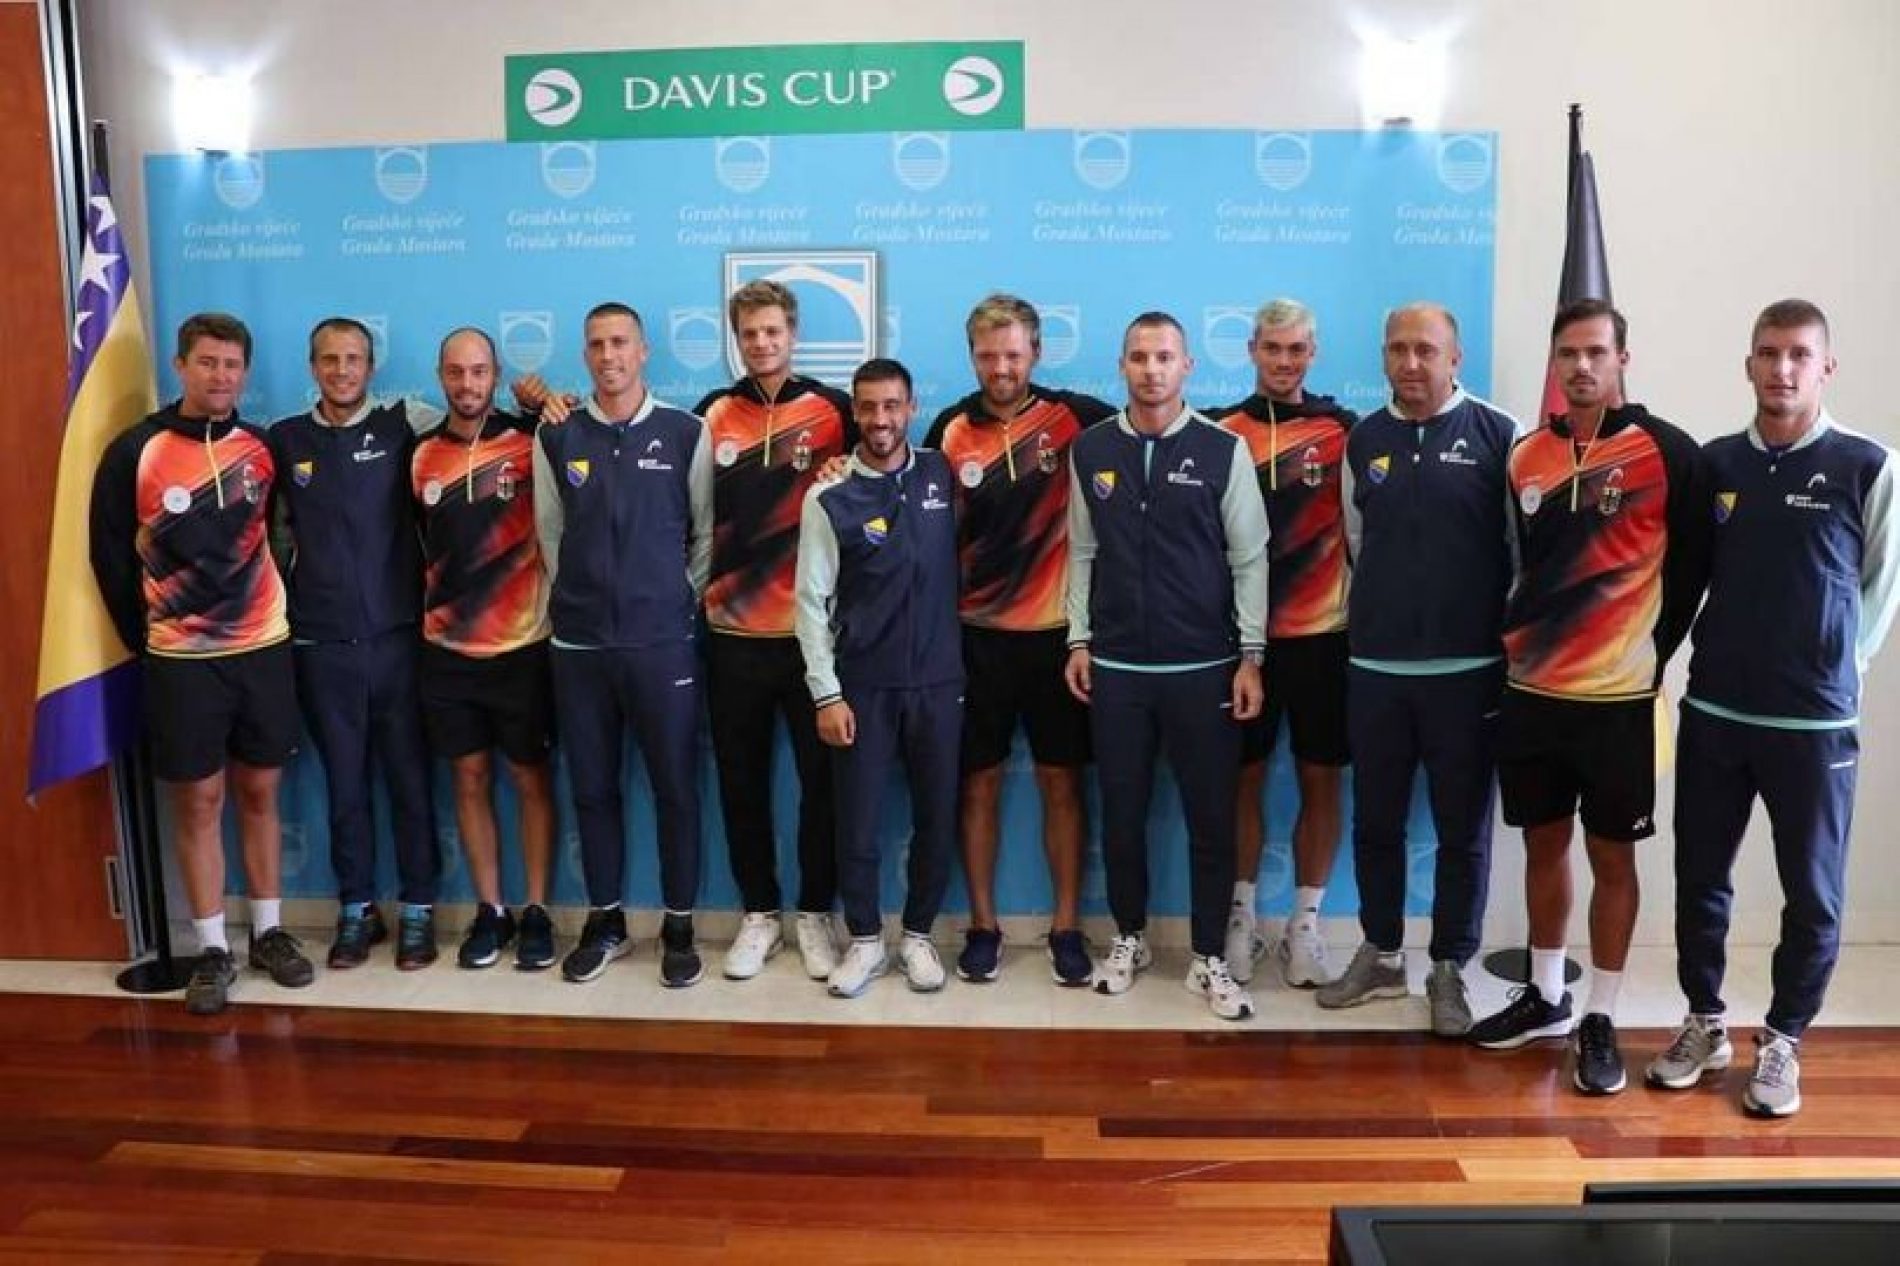 Davis Cup: Dvoboj između Bosne i Hercegovine i Njemačke otvaraju Fatić i Altmaier